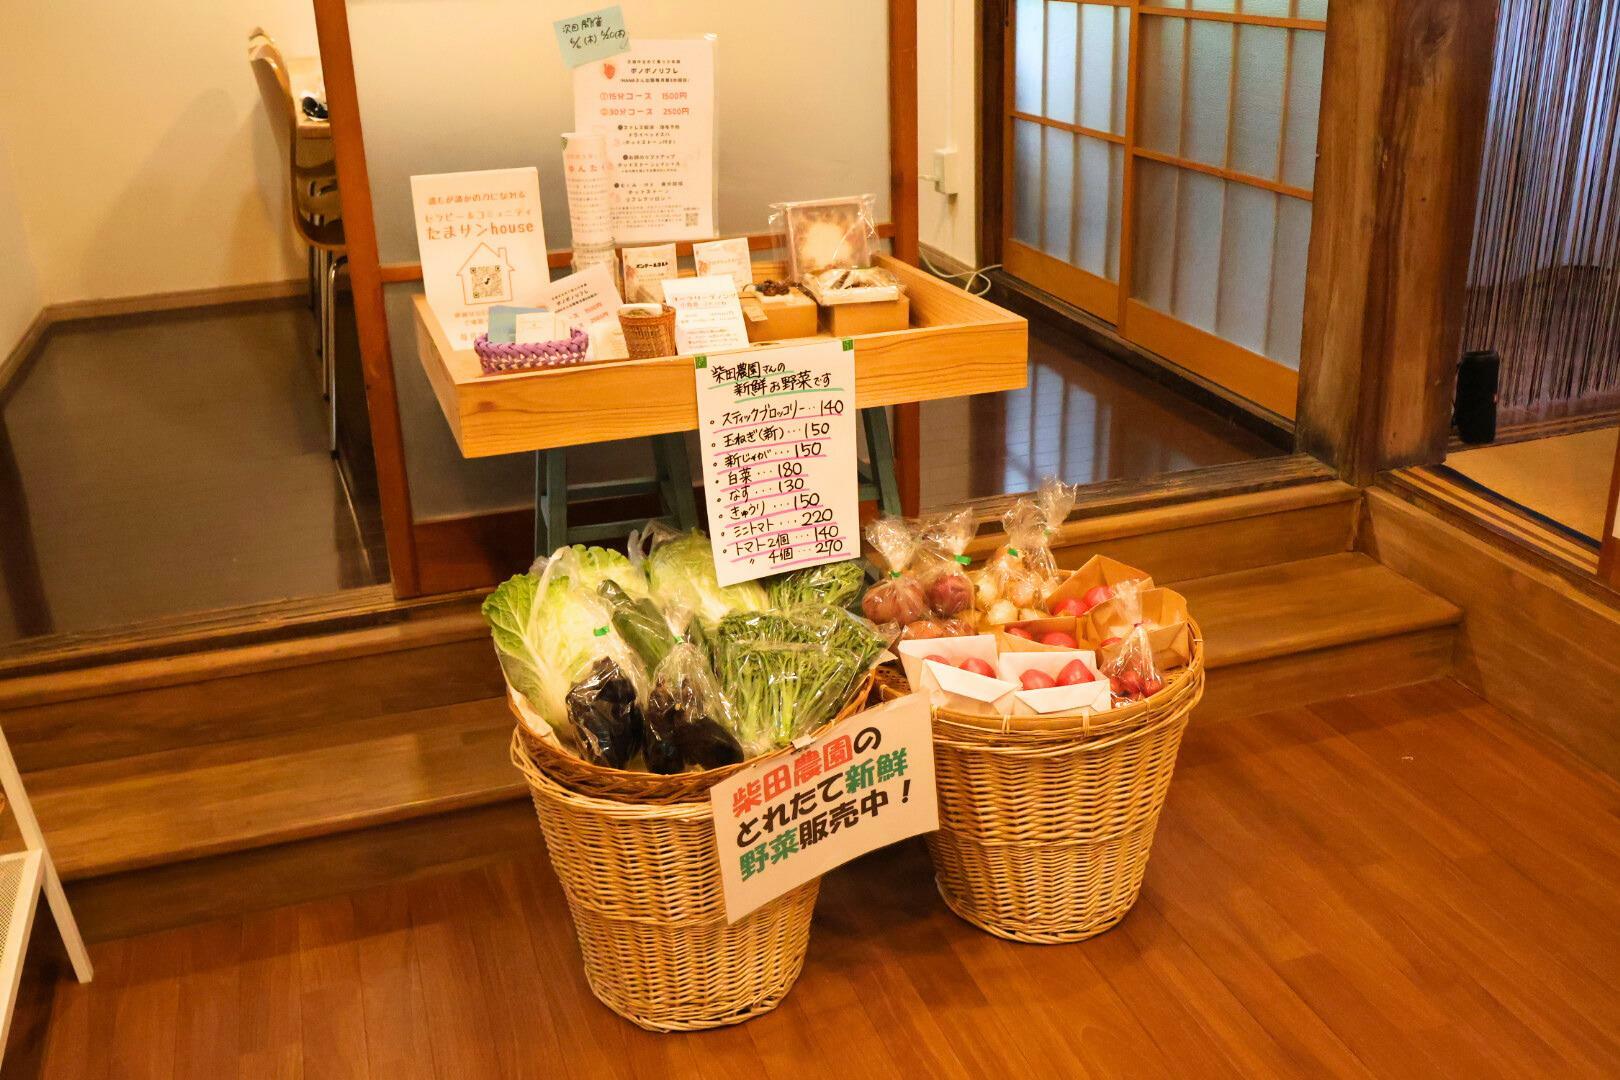 柴田農園さんの野菜も販売されています